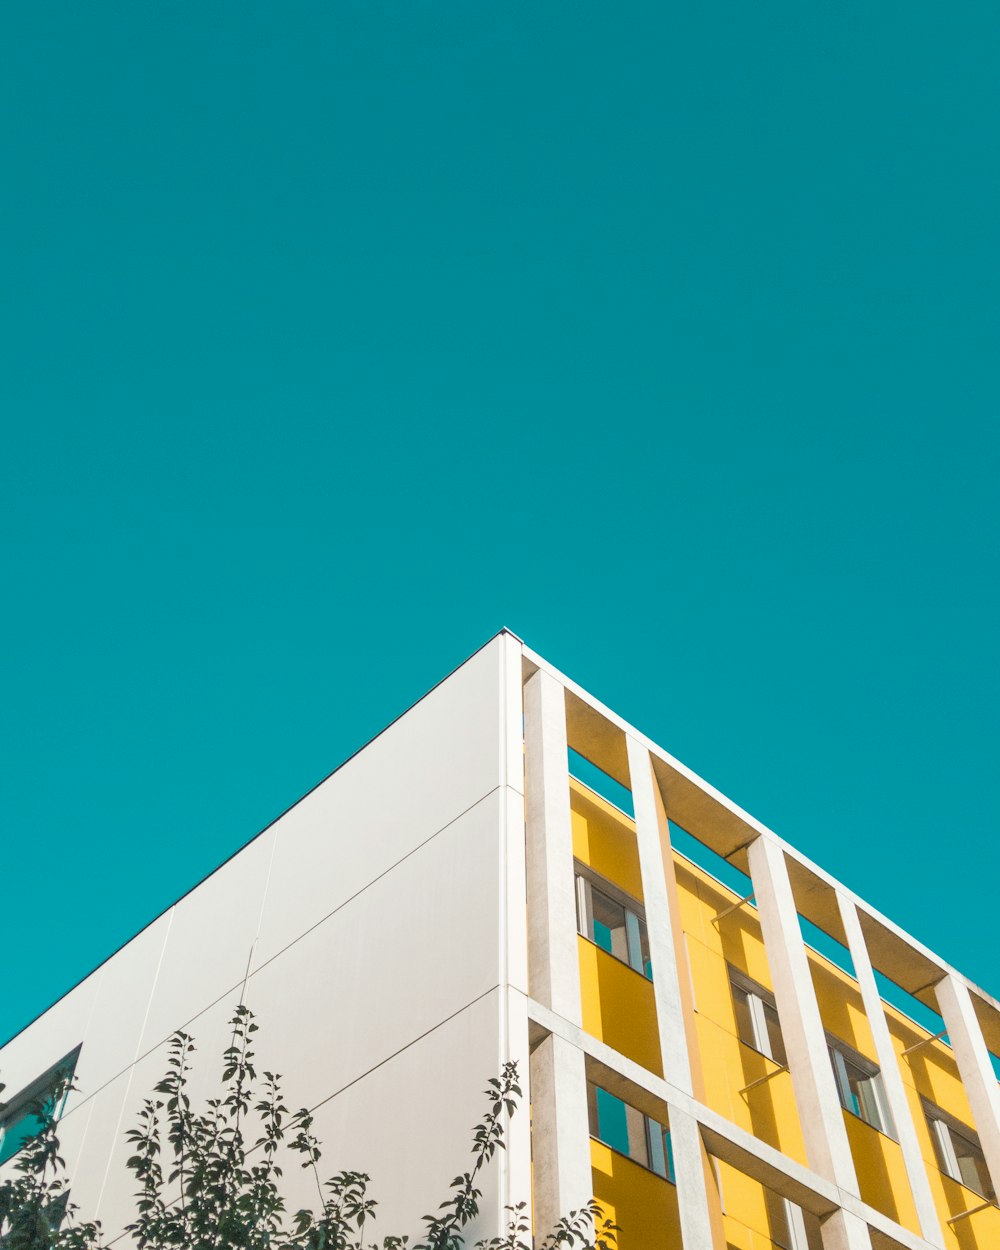 Fotografía de ángulo bajo de un edificio de hormigón blanco y amarillo